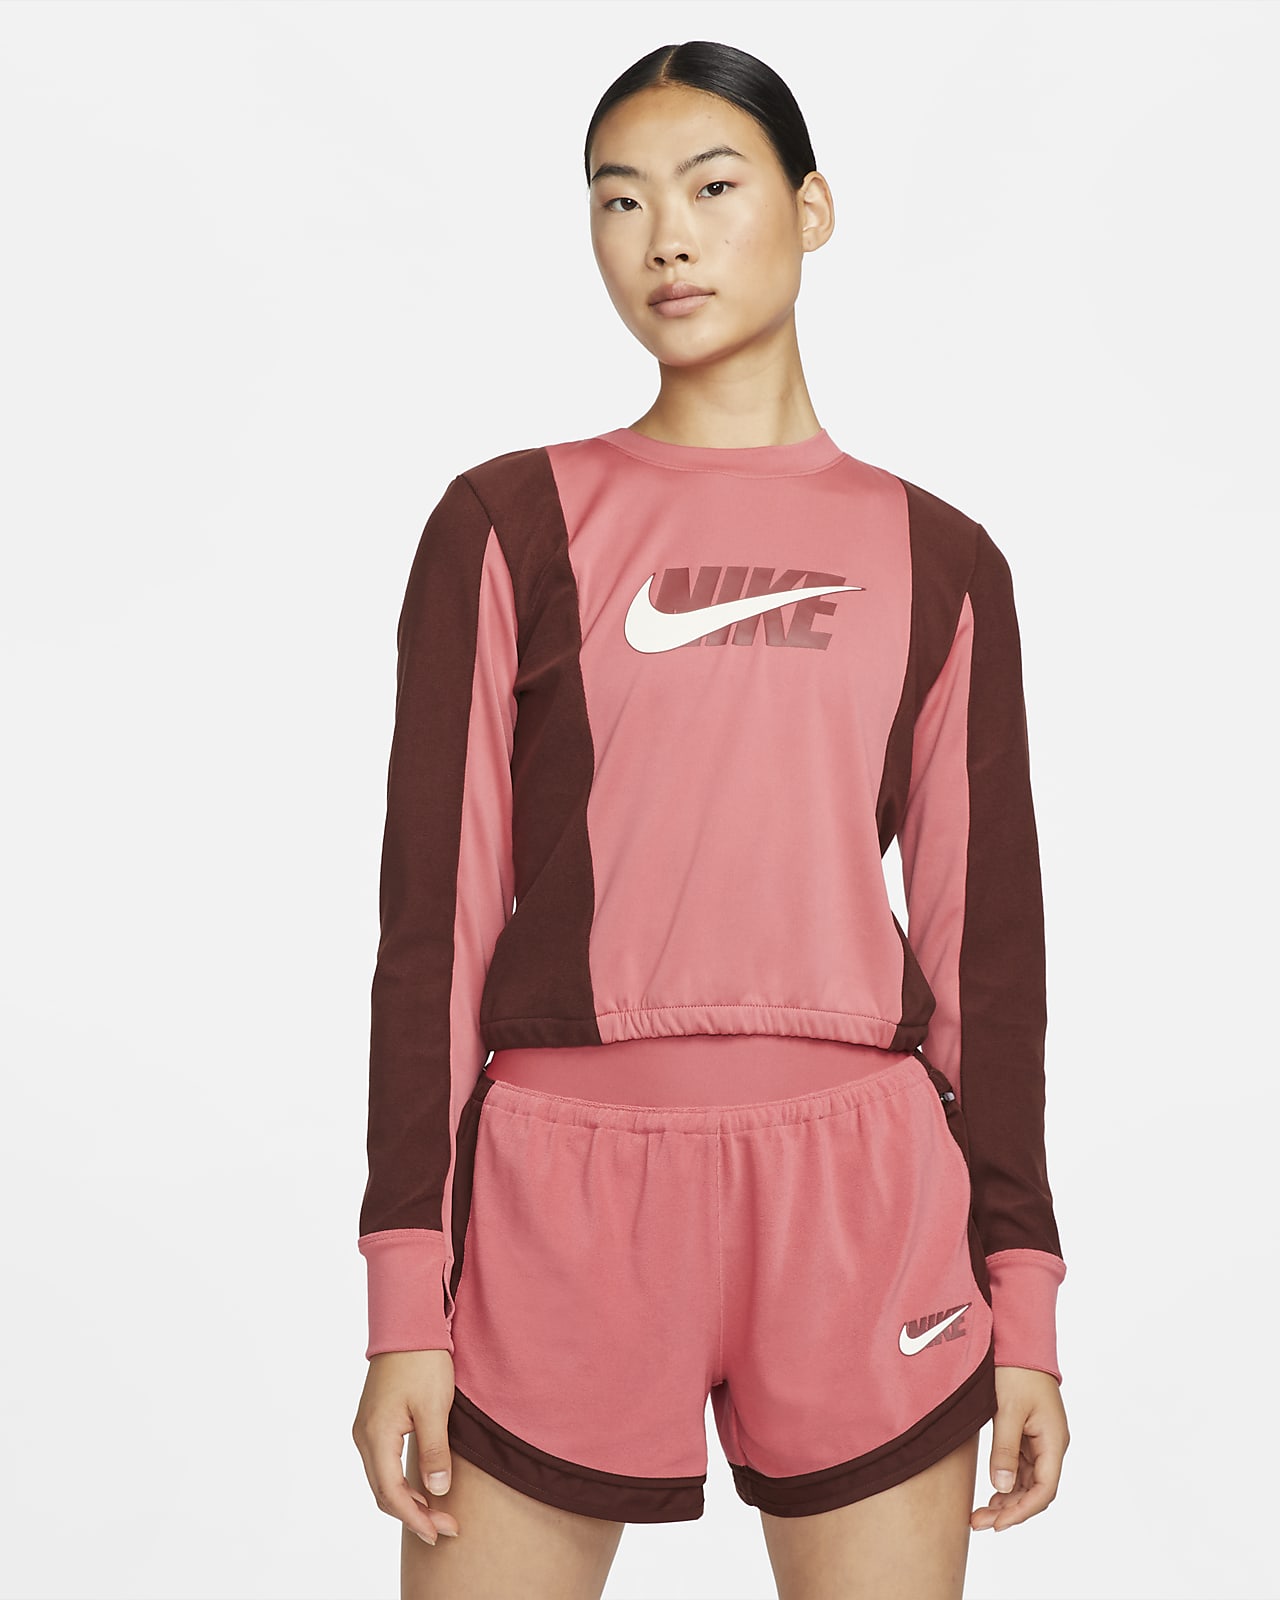 เสื้อวิ่งมิดเลเยอร์ผู้หญิง Nike Dri-FIT Icon Clash